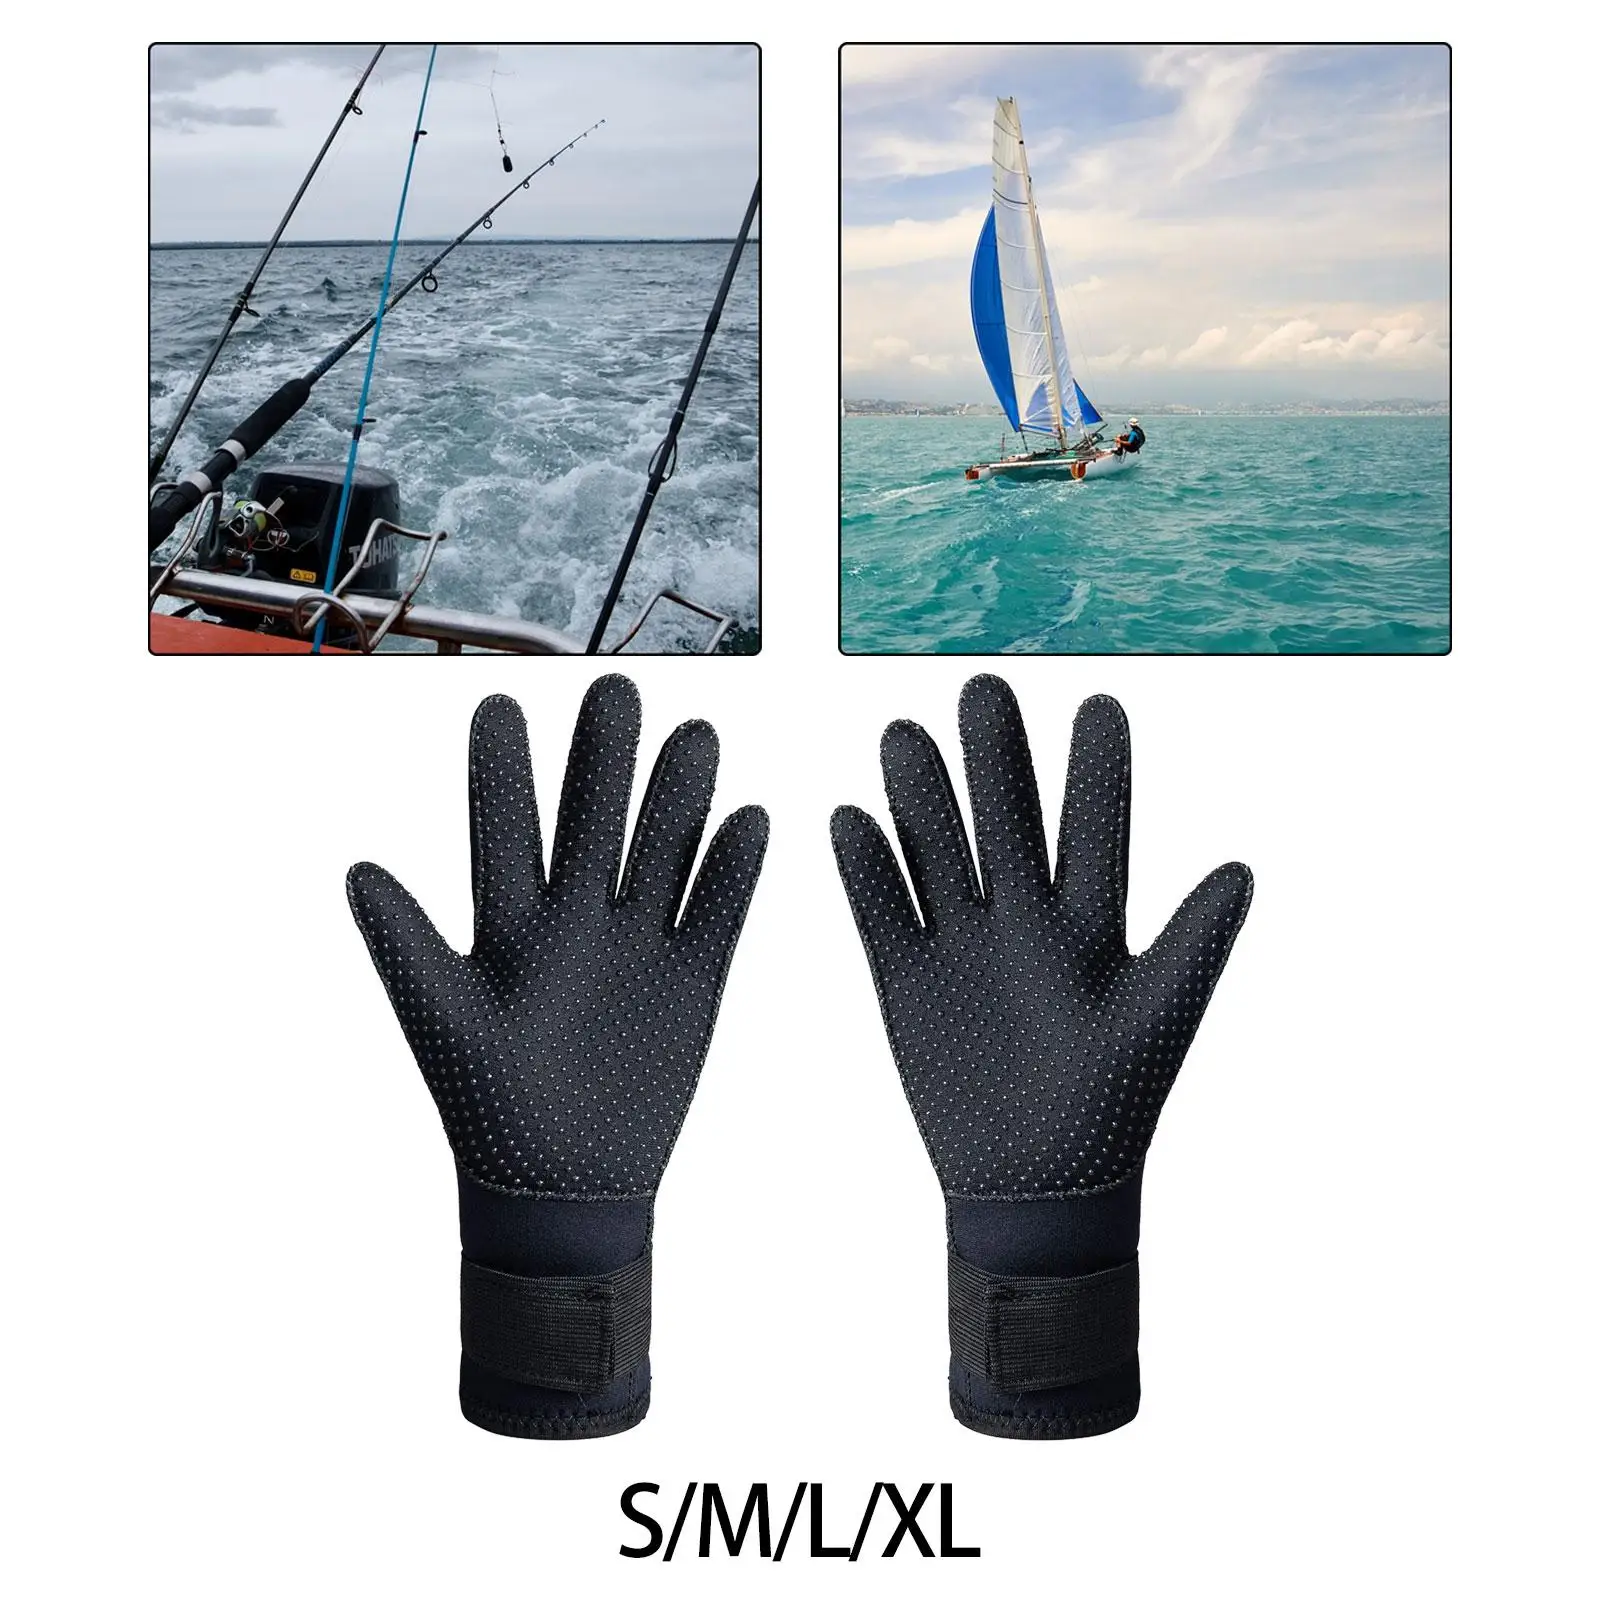 3mm Neoprene Gloves Wetsuit Gloves Hand Protection Scuba Diving Gloves for Women Men Spearfishing Lap Swimming Paddling Surfing